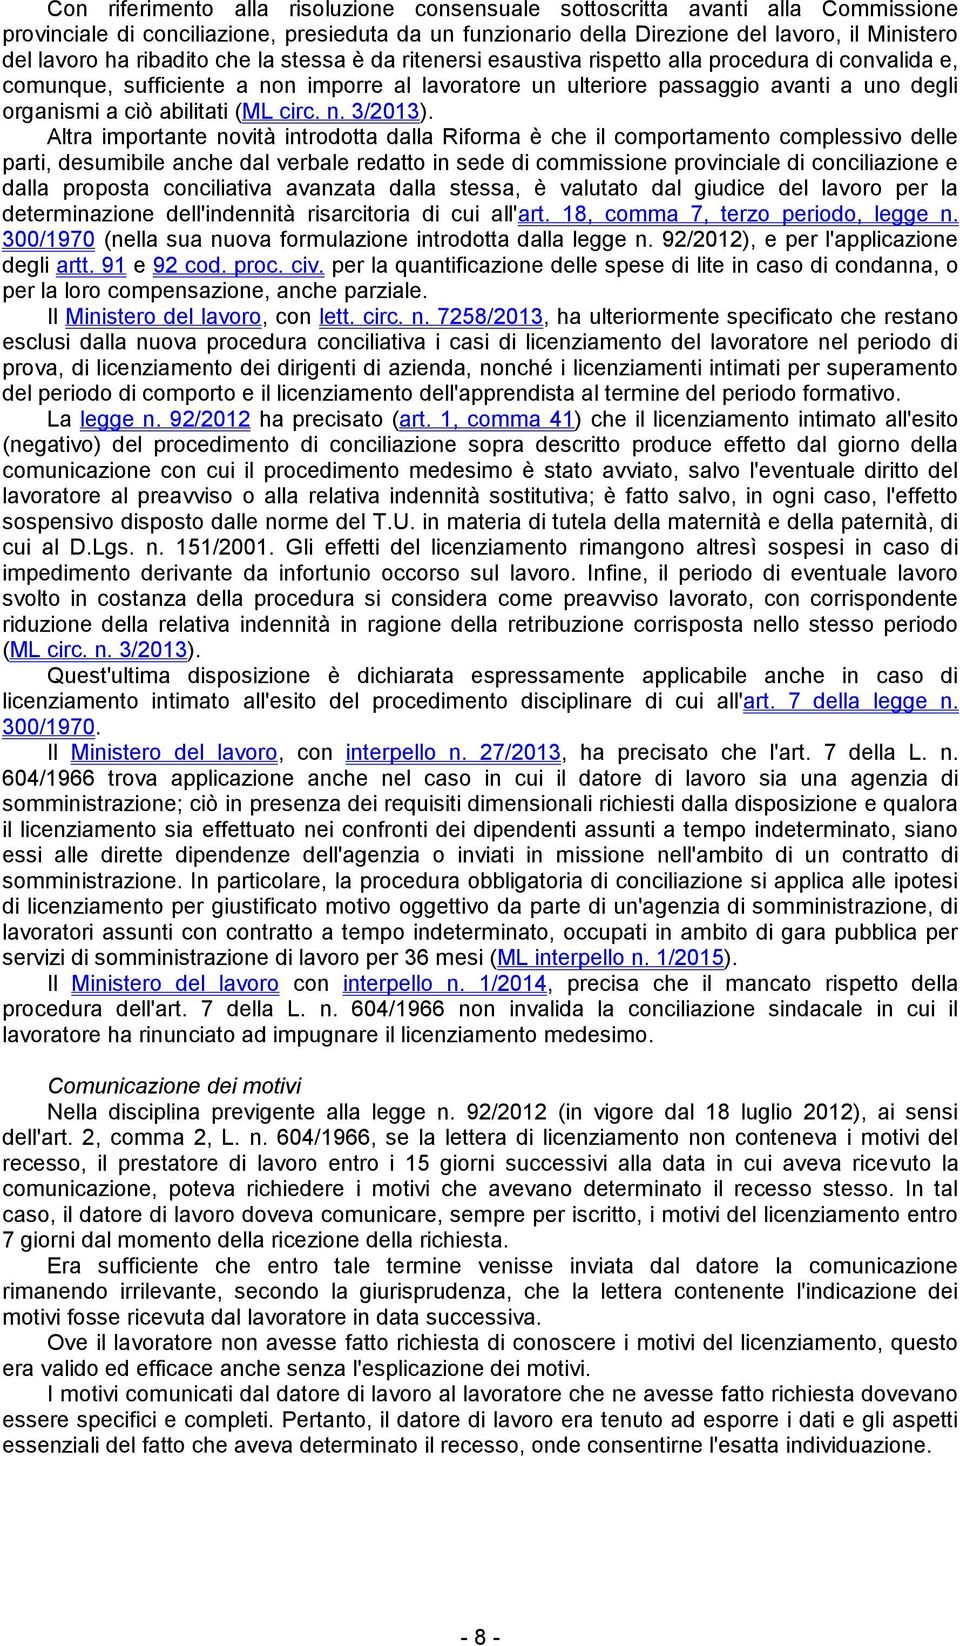 abilitati (ML circ. n. 3/2013).